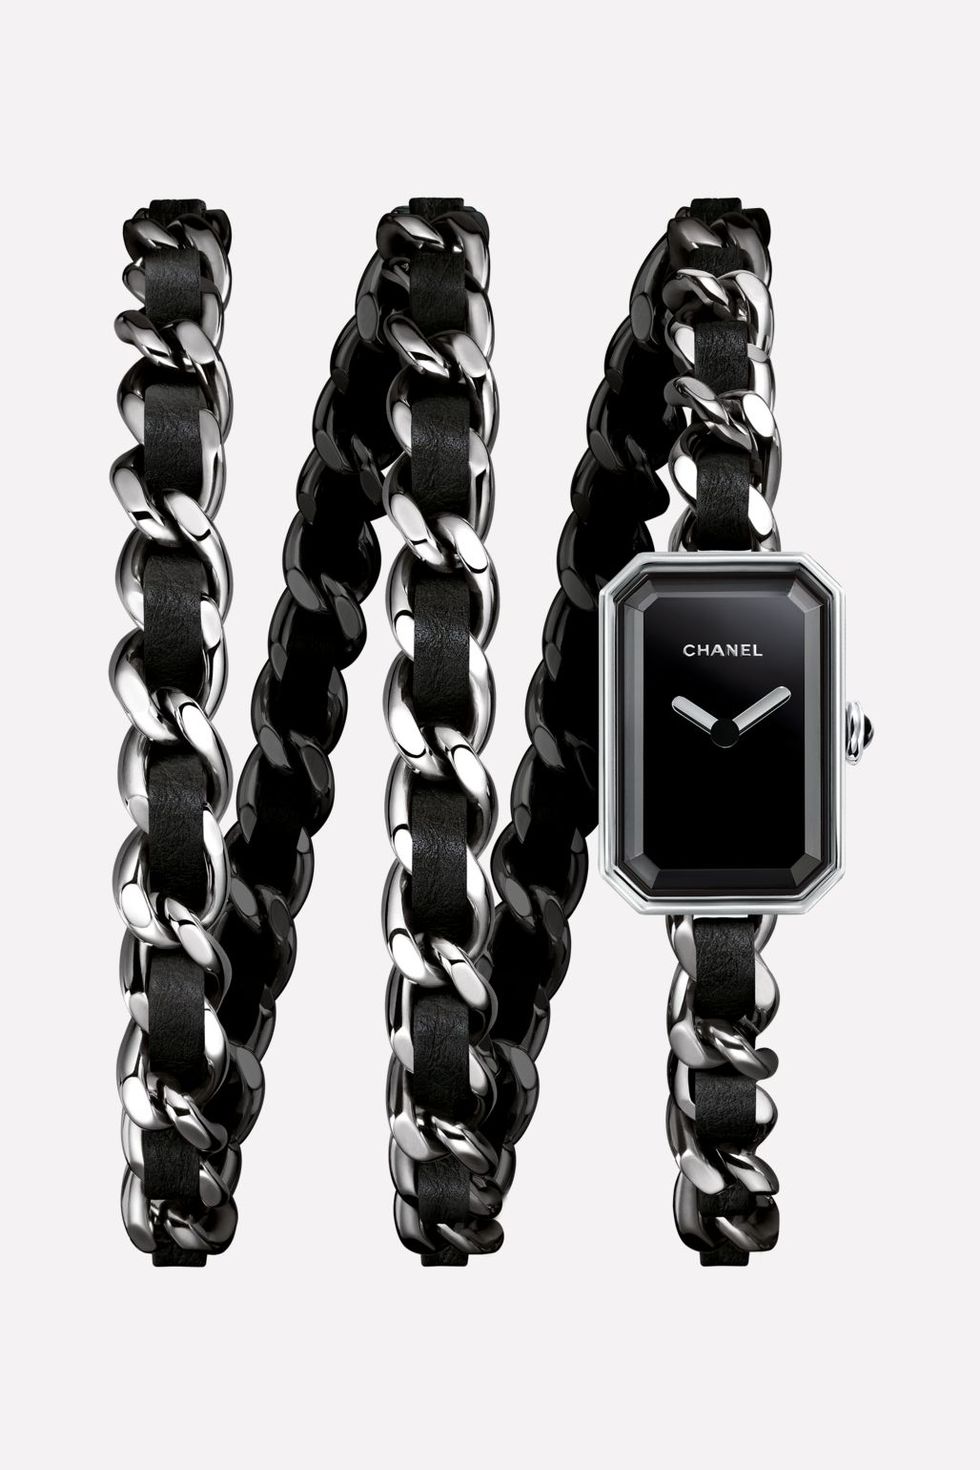 Chanel Première Rock Watch Steel and Black Leather Triple Row Bracelet